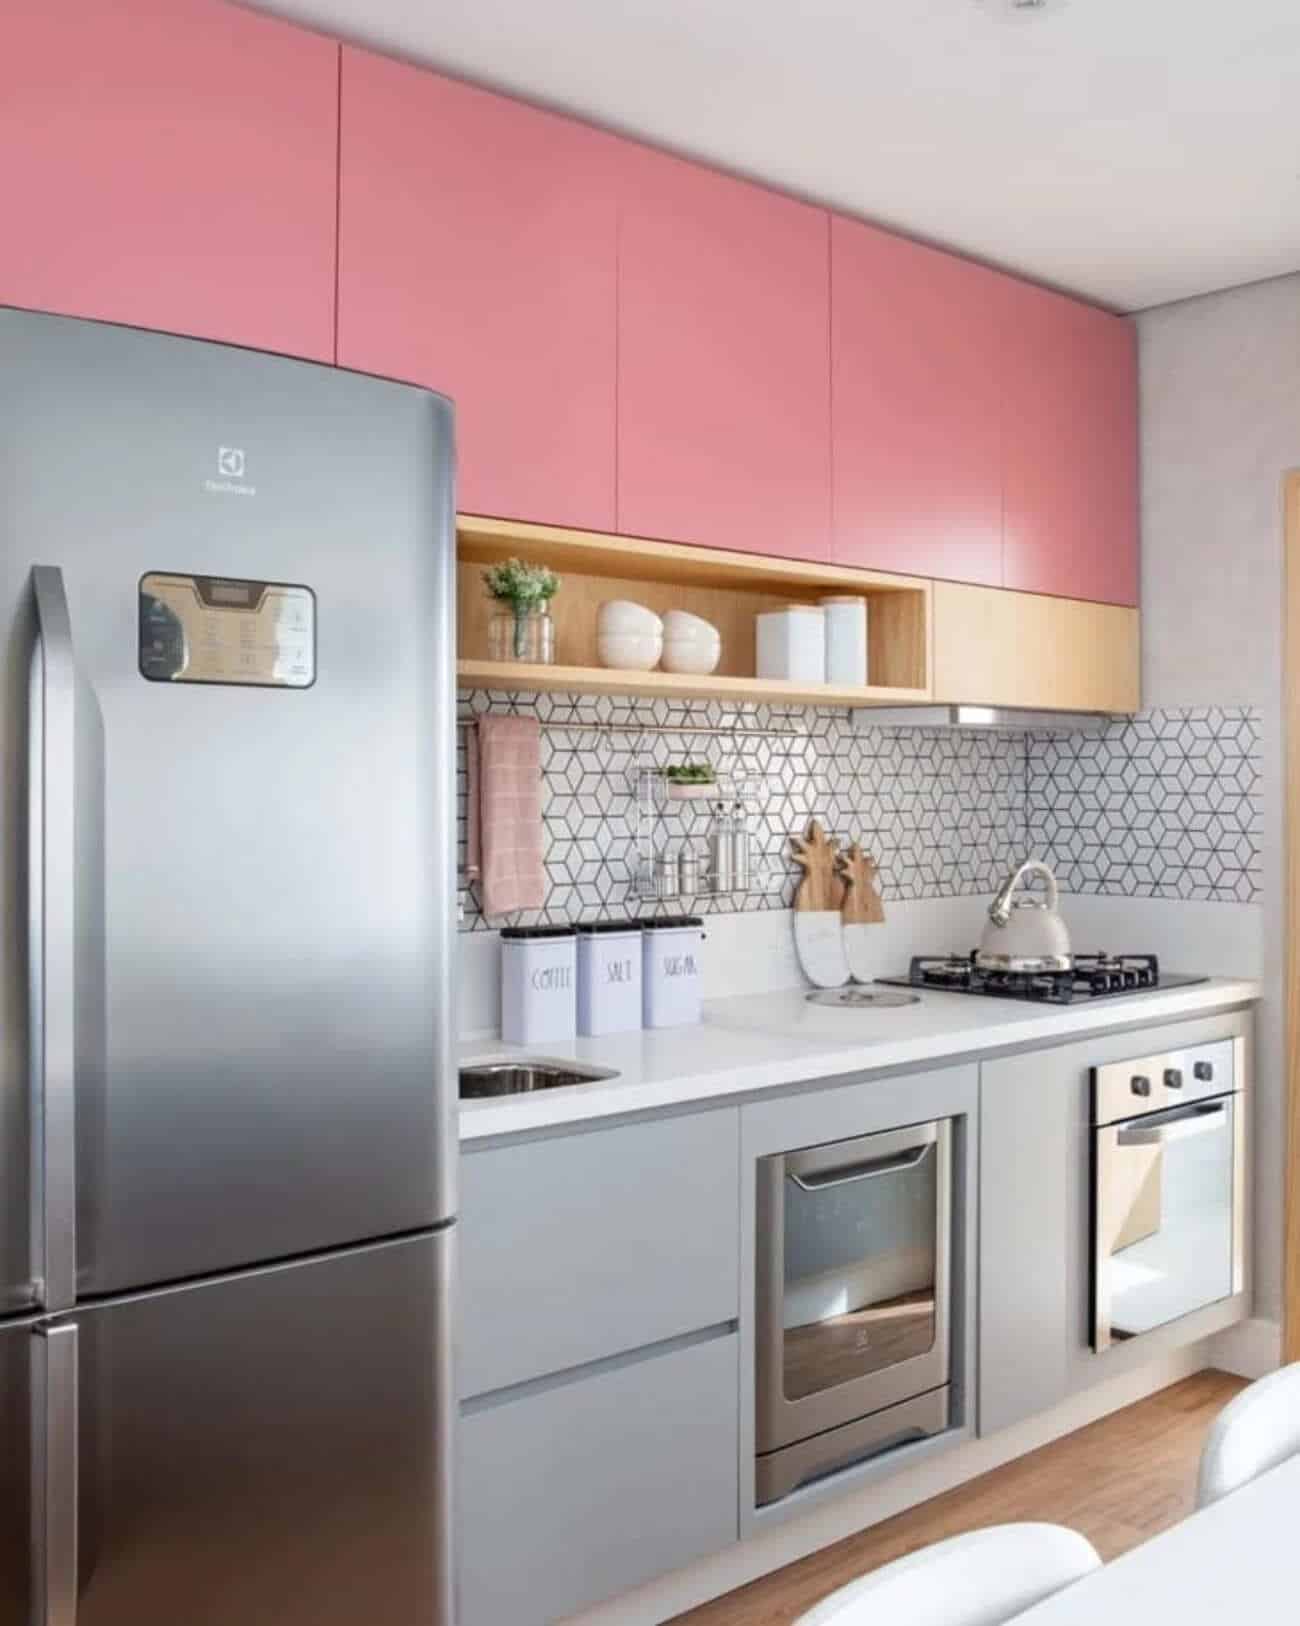 Cozinha rosa: dicas +15 modelos inspiradores p/ decorar o ambiente.